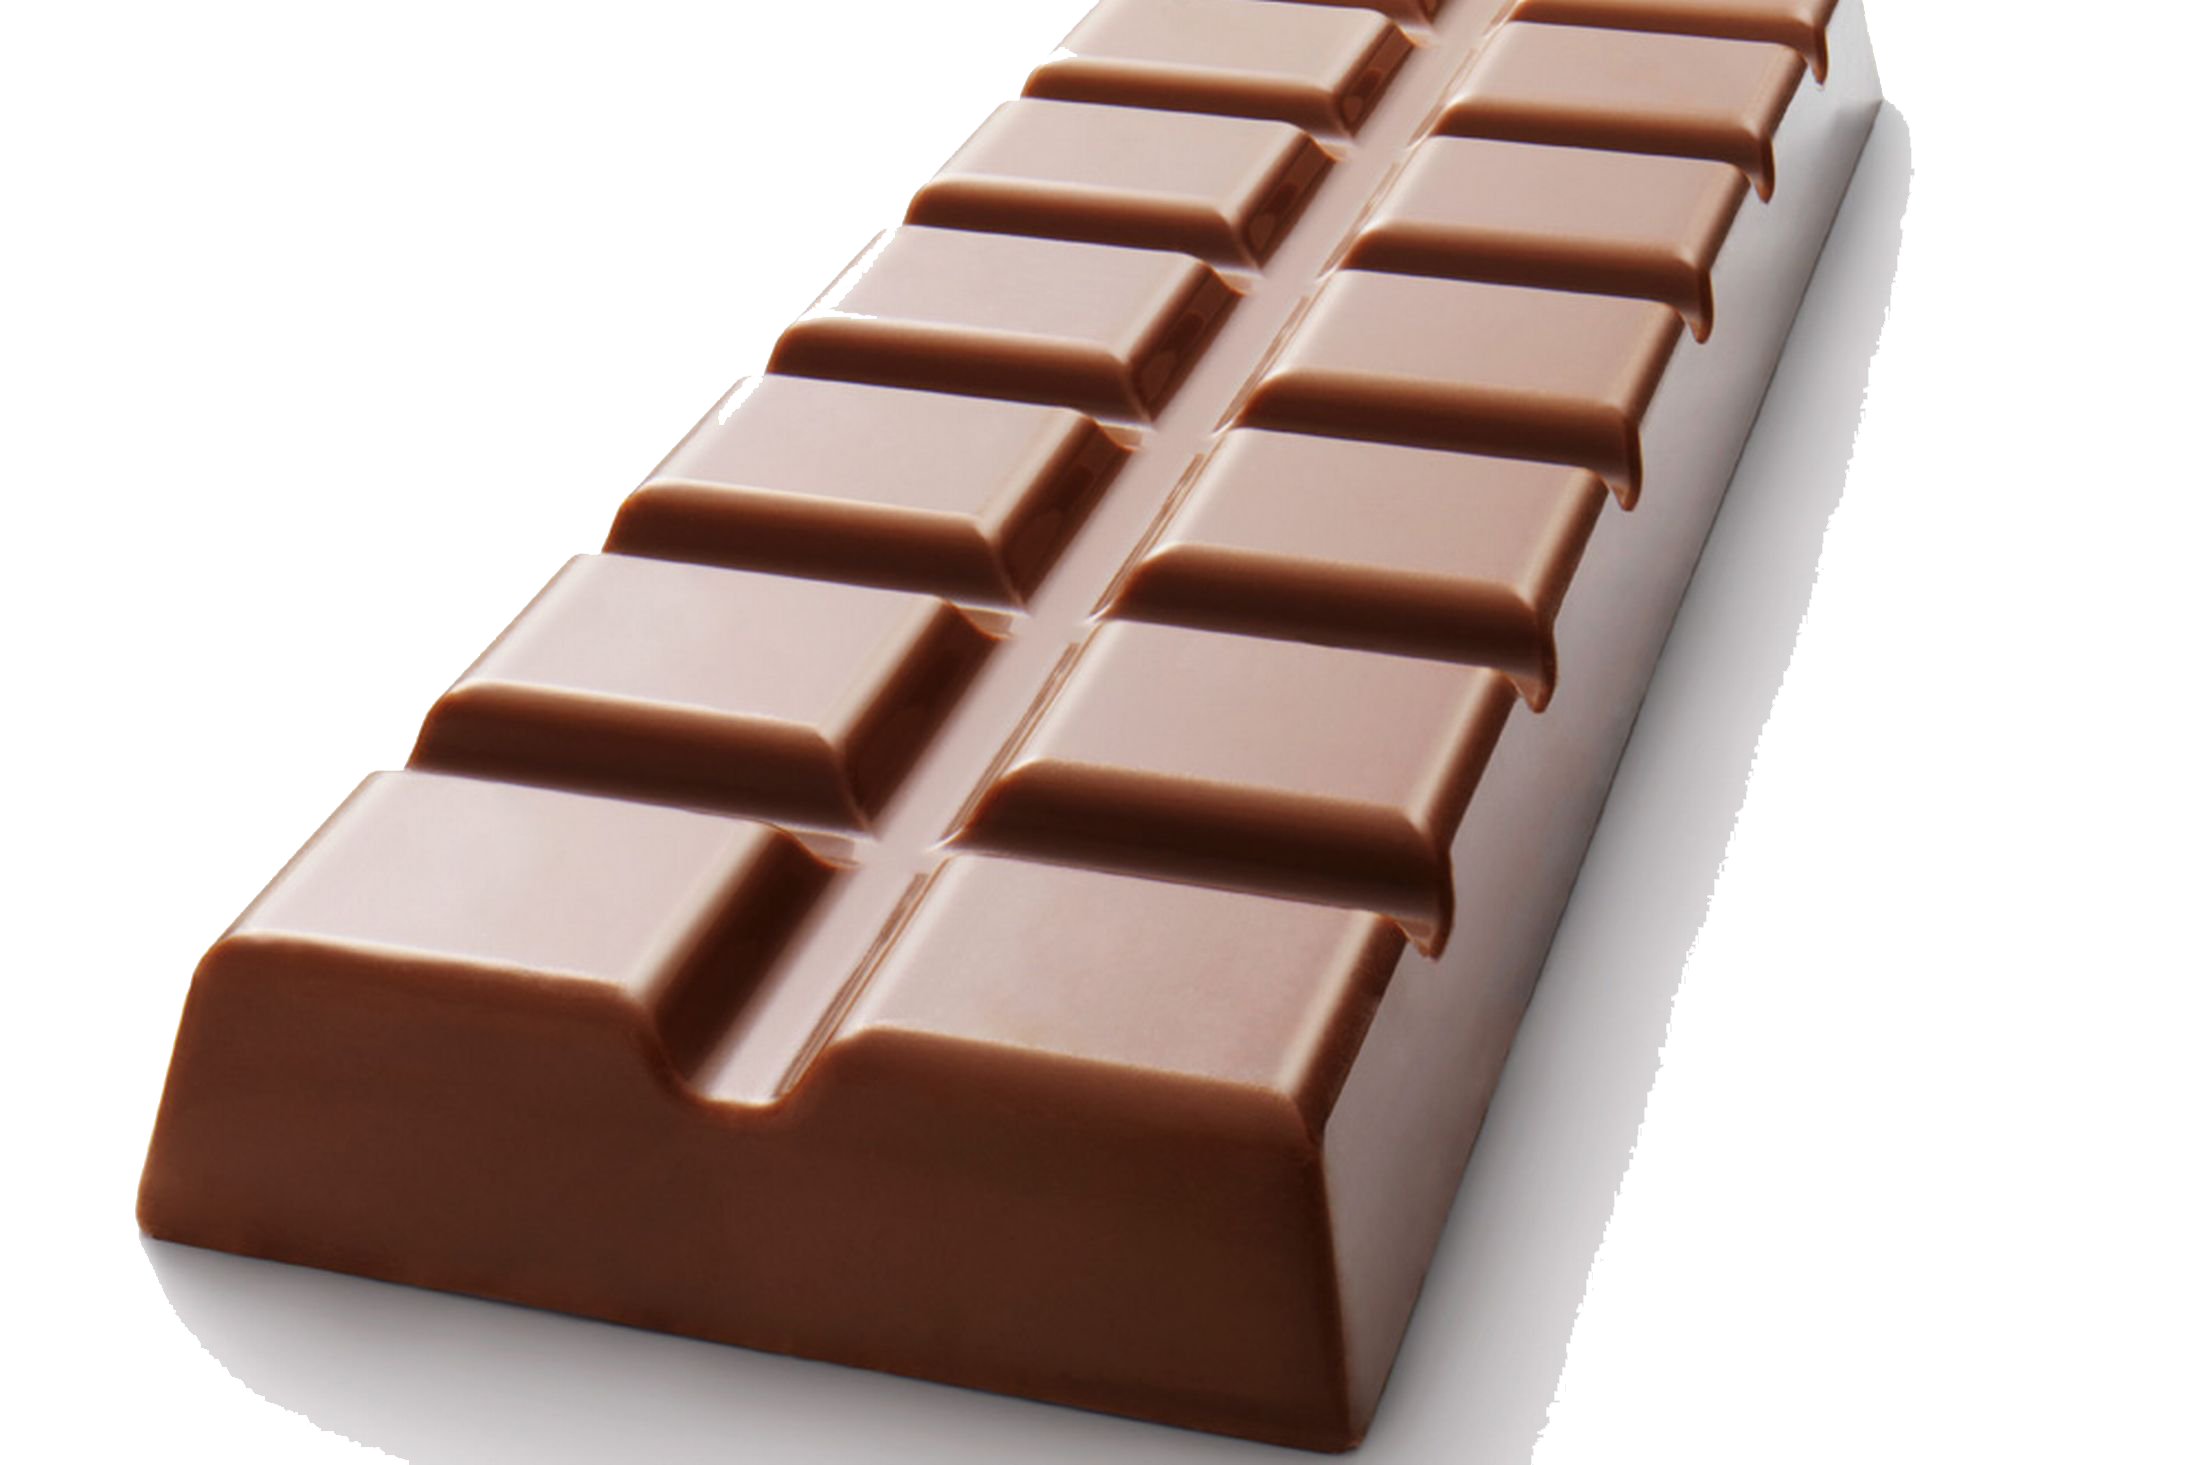 Сладкие шоколадные конфеты бар PNG фотографии